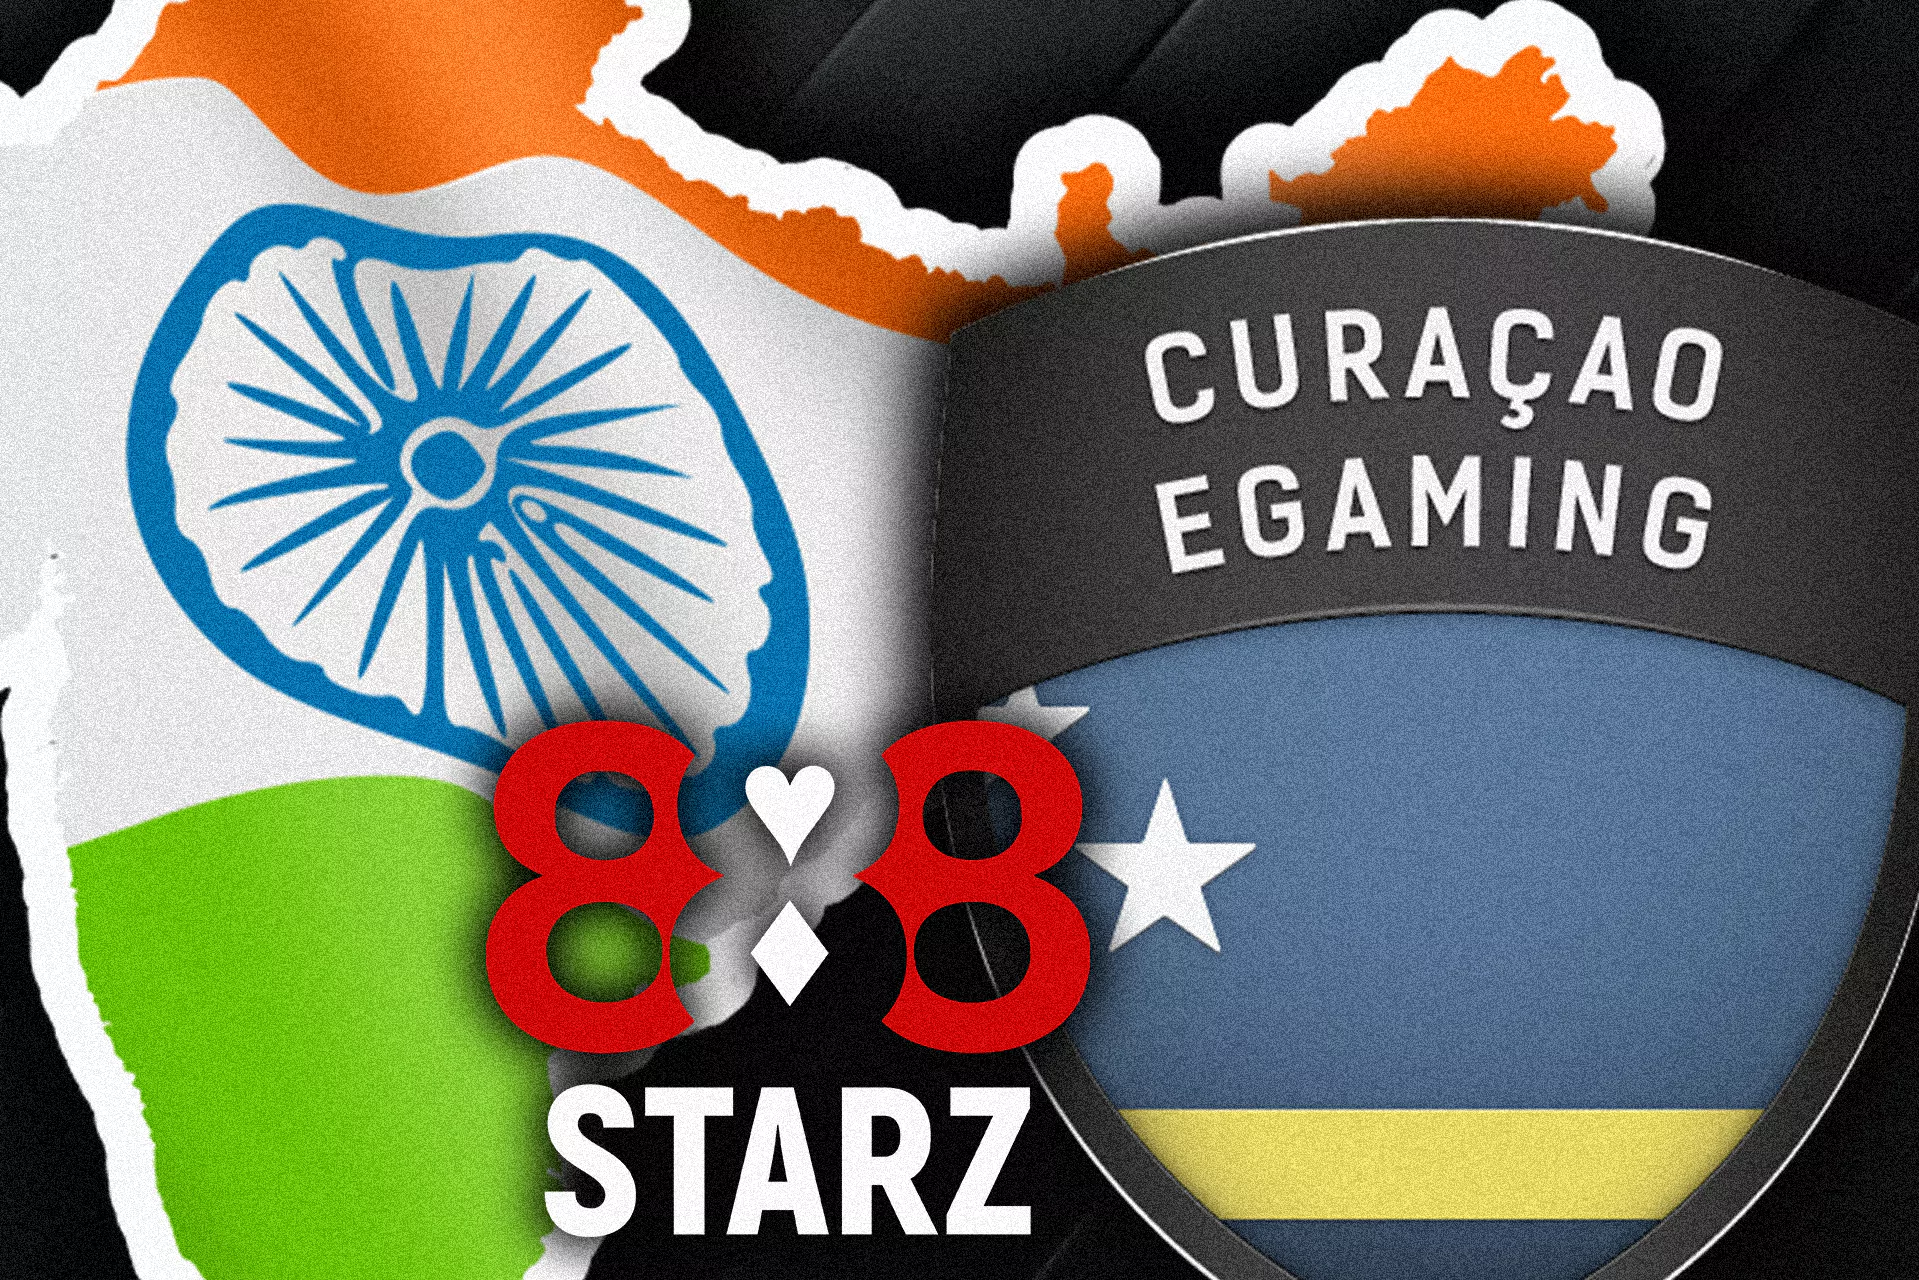 888starz कानूनी रूप से भारतीय उपयोगकर्ताओं के साथ काम करता है।